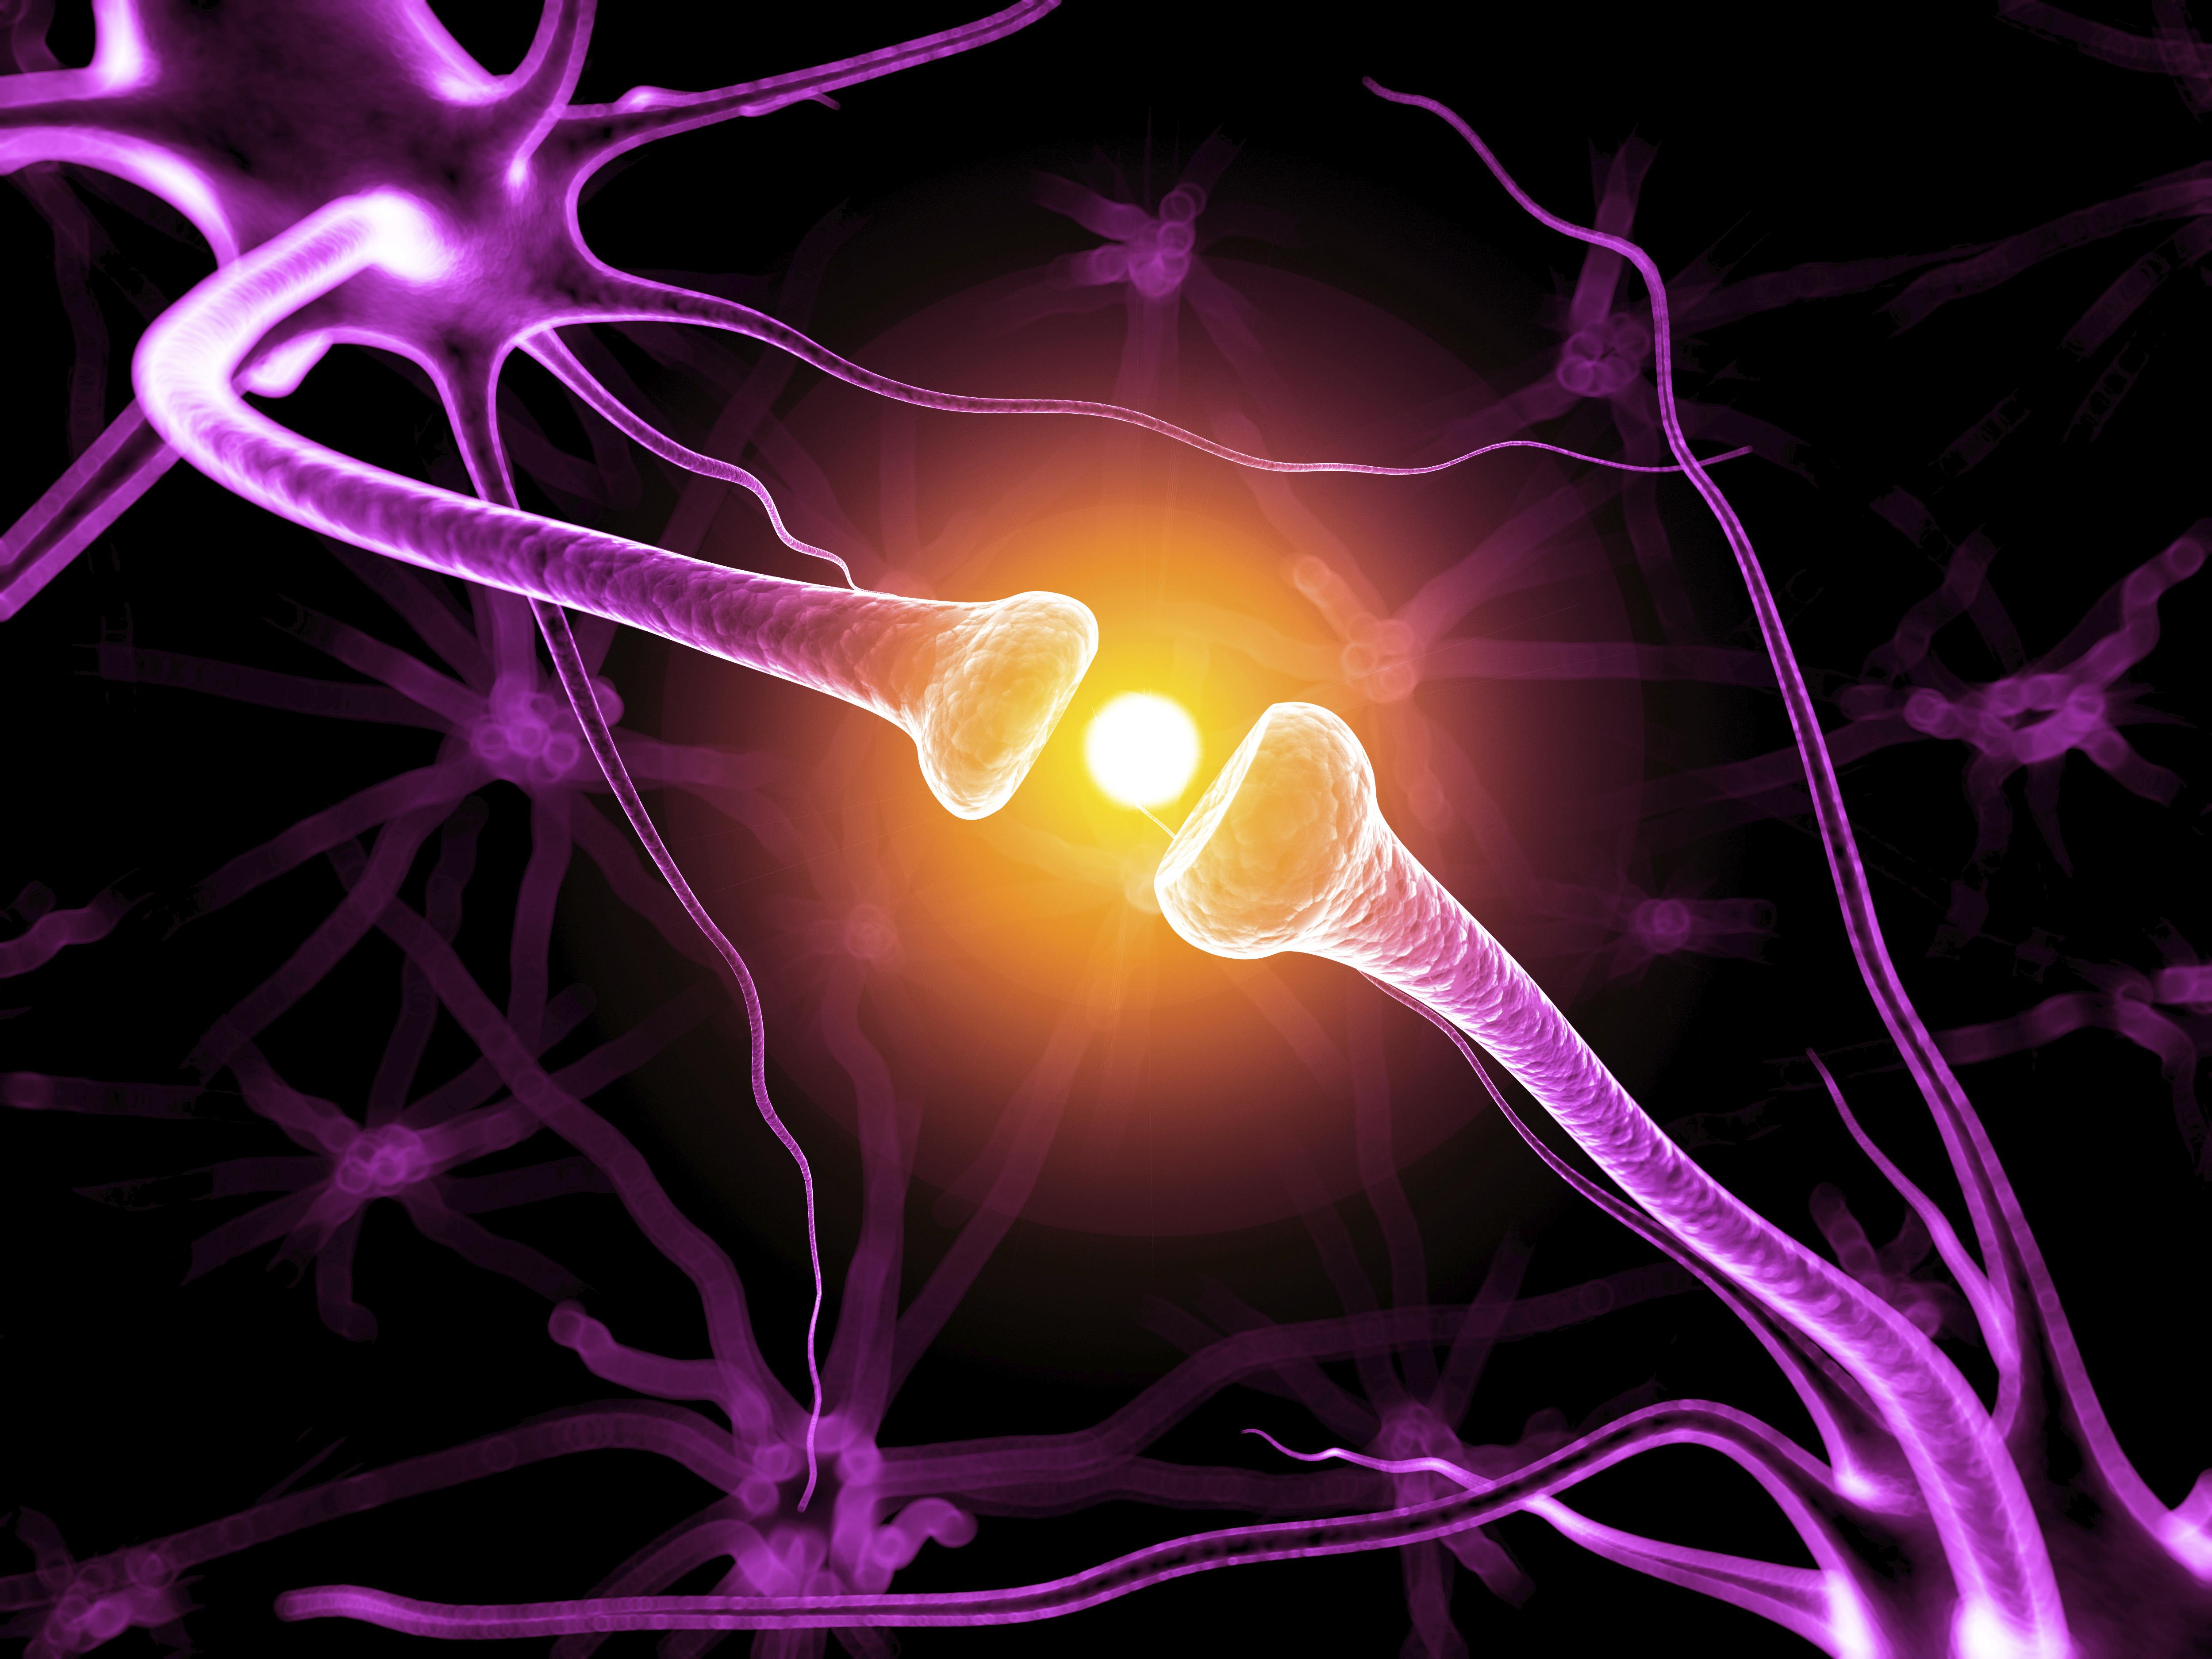 Скорость импульса мозга. Передача нервного импульса между нейронами. Электрические импульсы в нервной системе. Электрические импульсы мозга. Нервный Импульс в нейронах.